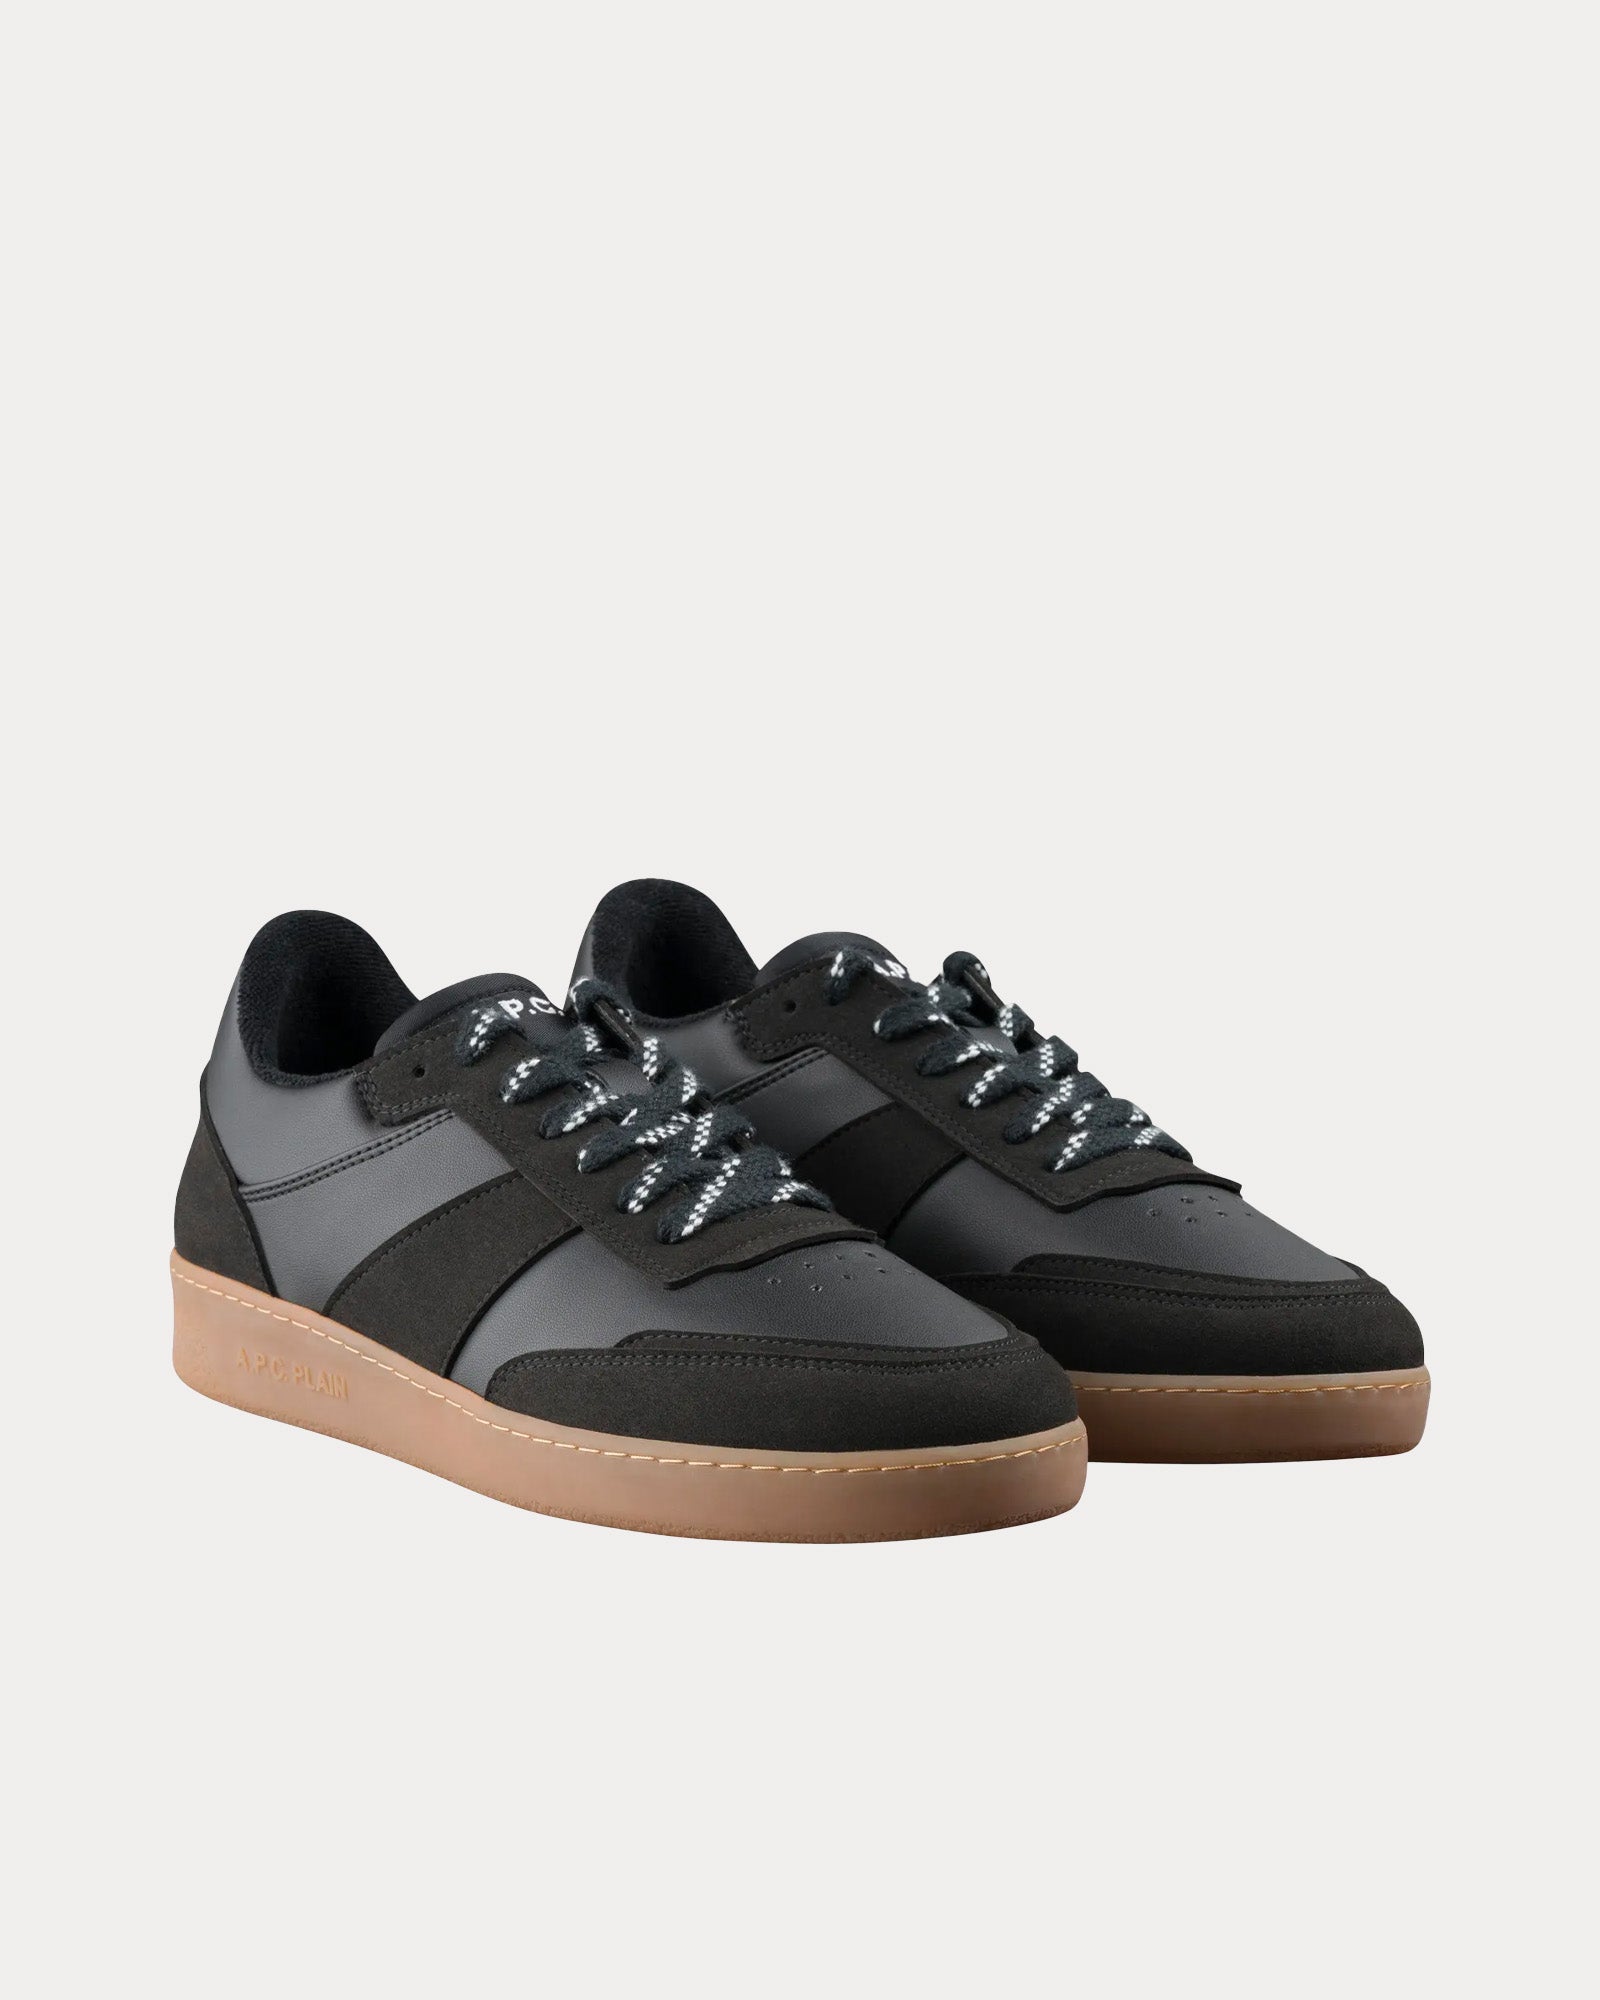 A.P.C. - Plain Black Low Top Sneakers